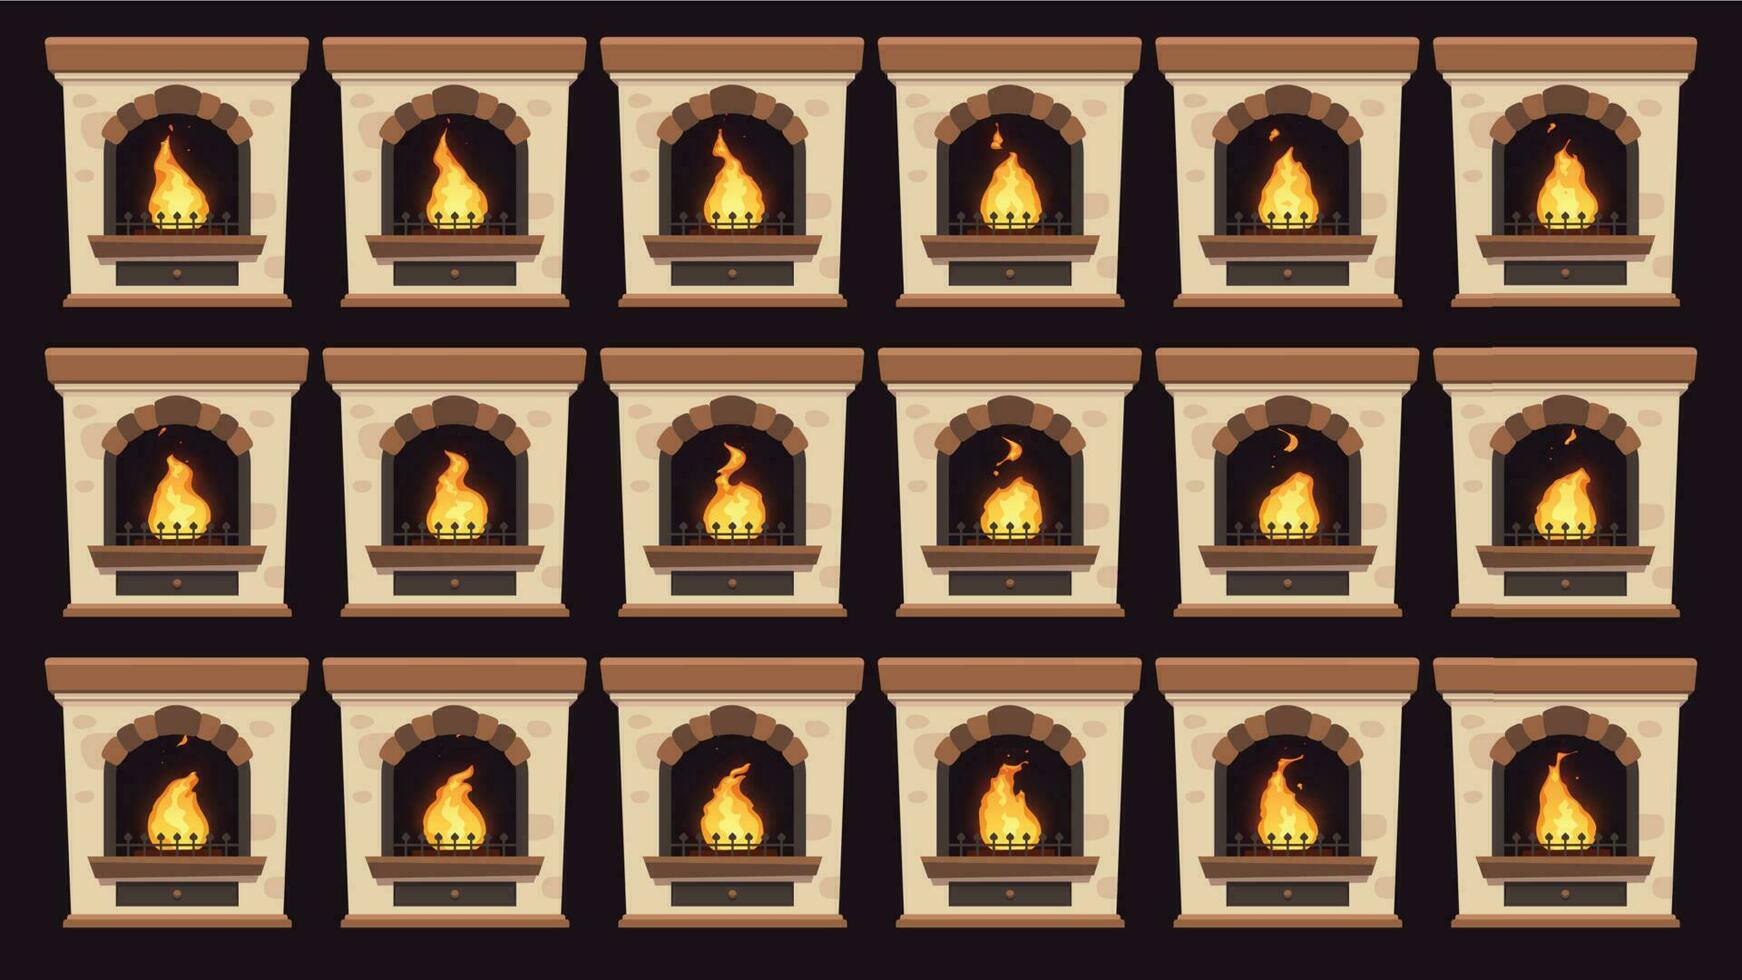 Animé Feu dans cheminée. flammes animation dans rétro Accueil bois brûlant cheminées isolé vecteur dessin animé cadres ensemble